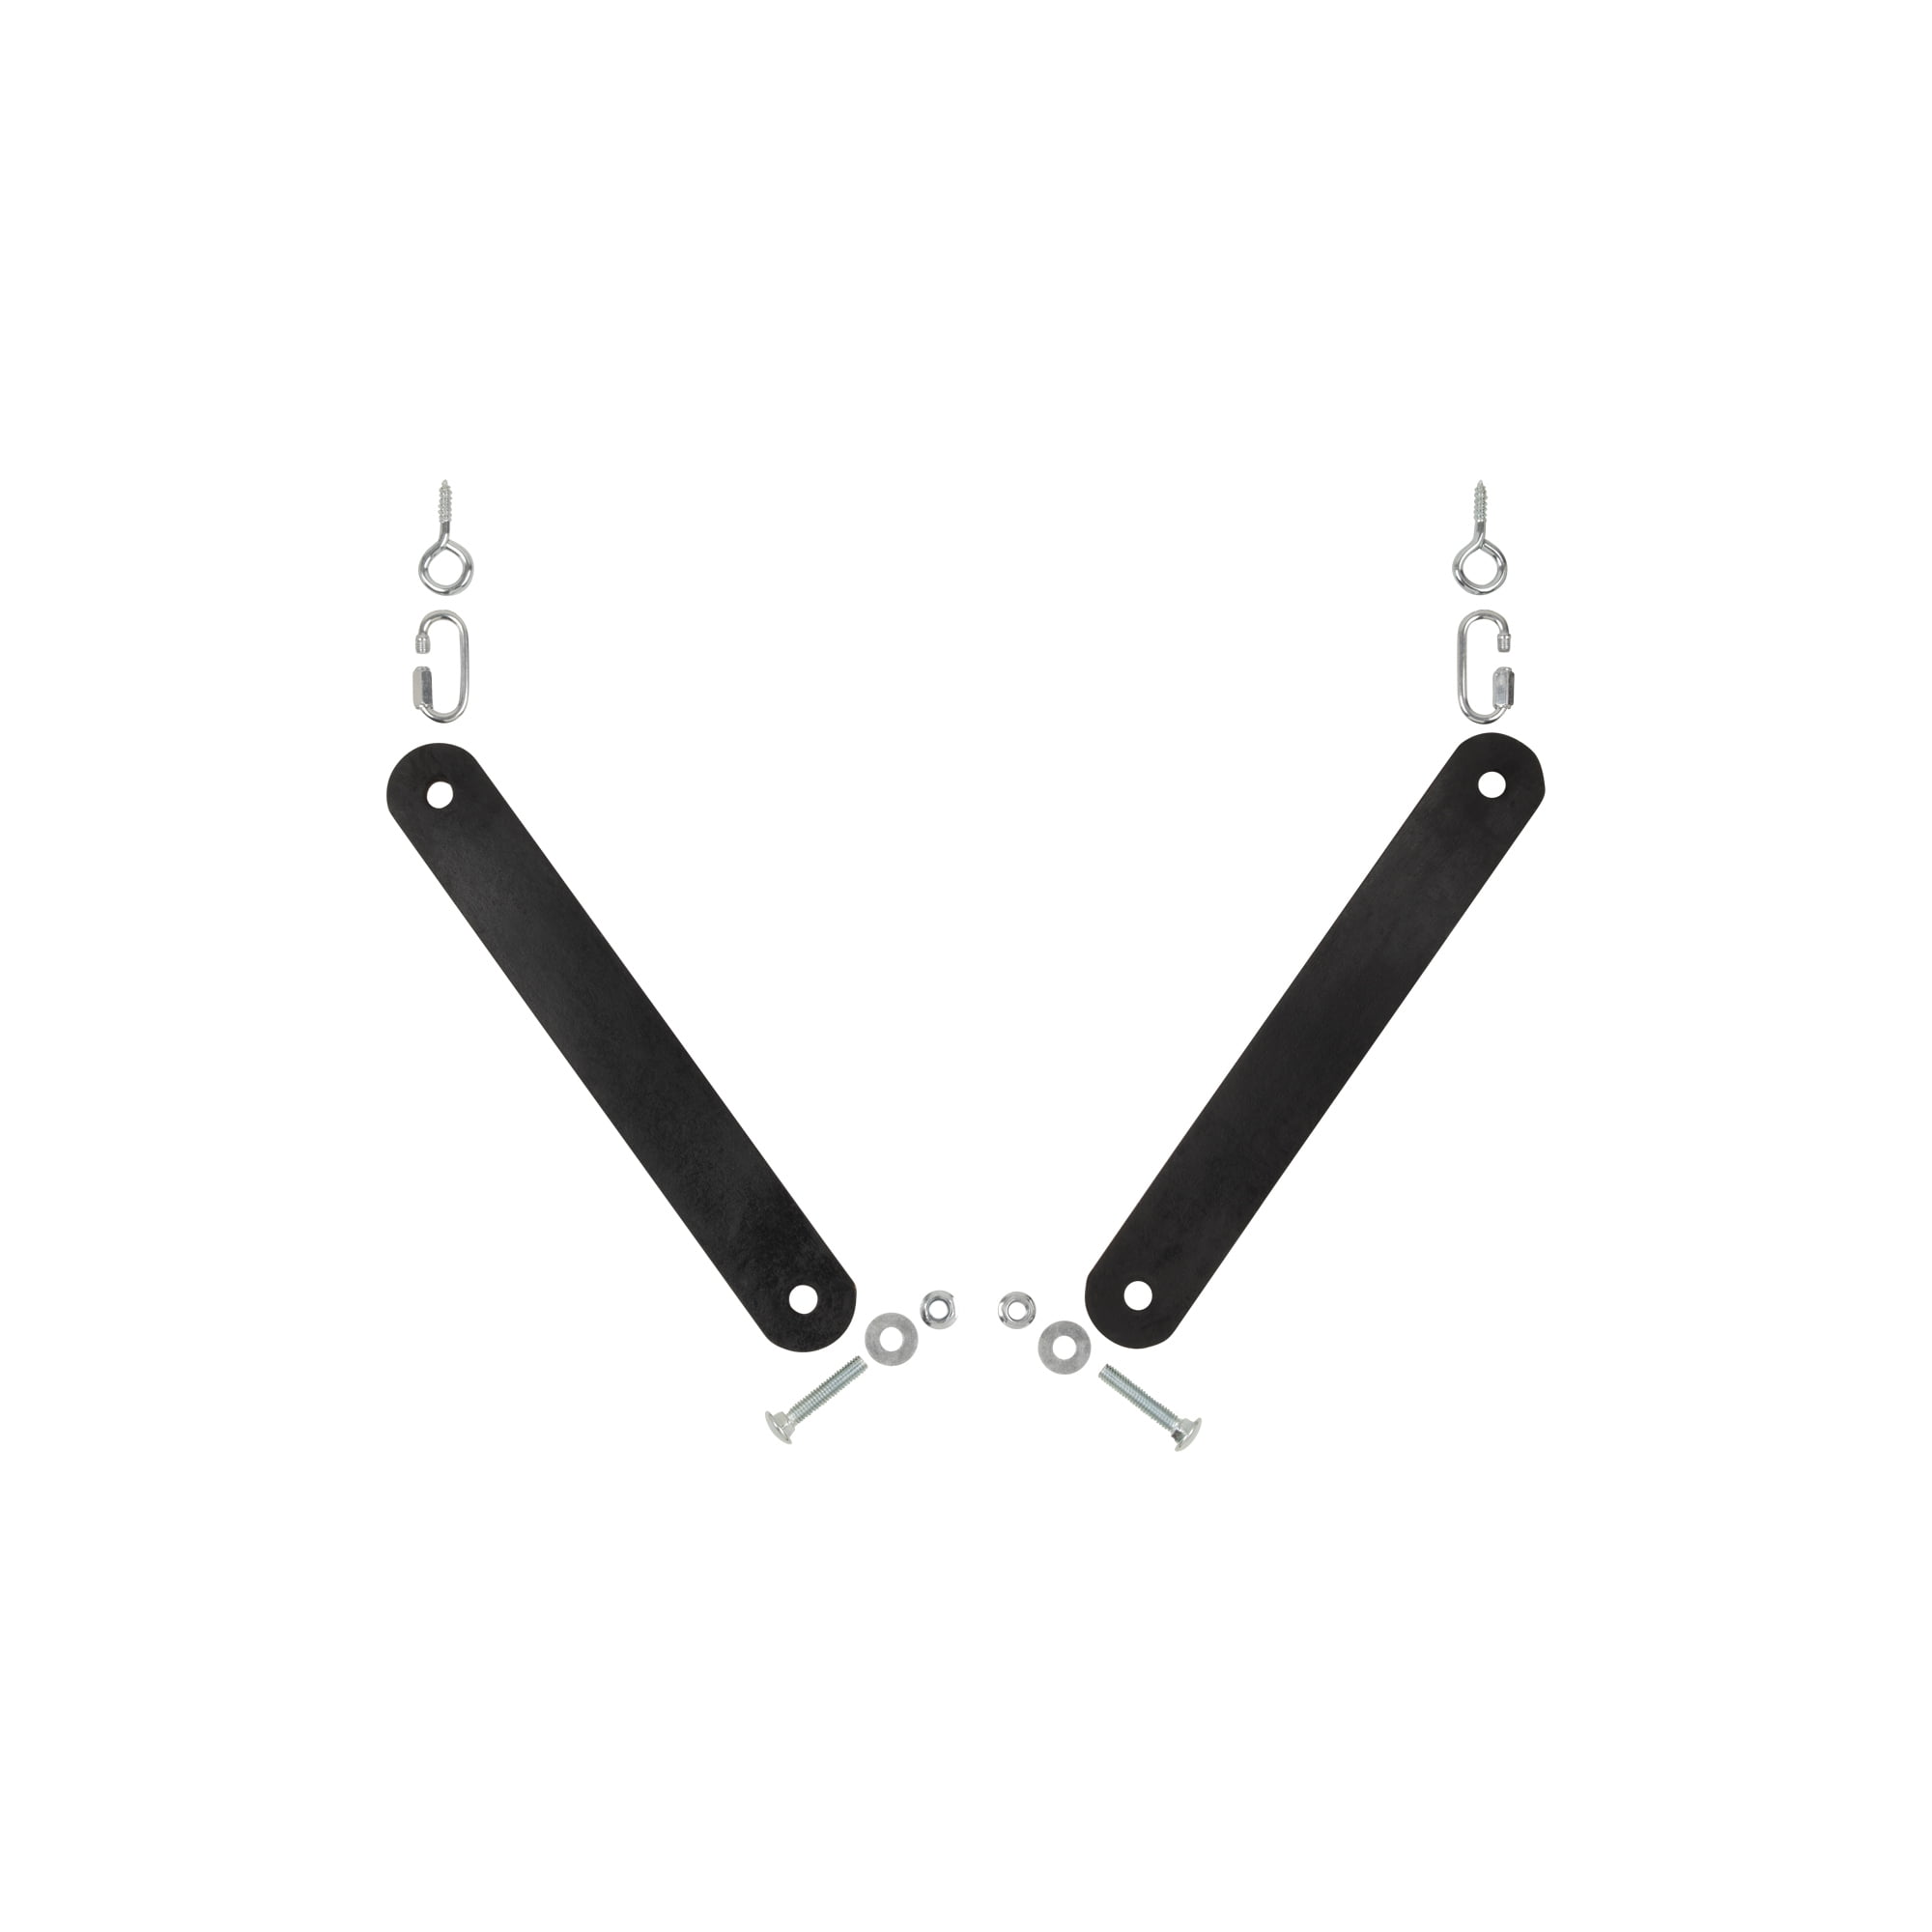 EZ Aim Gong Shooting Target Hanging Kit, Rubber Strap, 8"L, 1.4 lb, Black